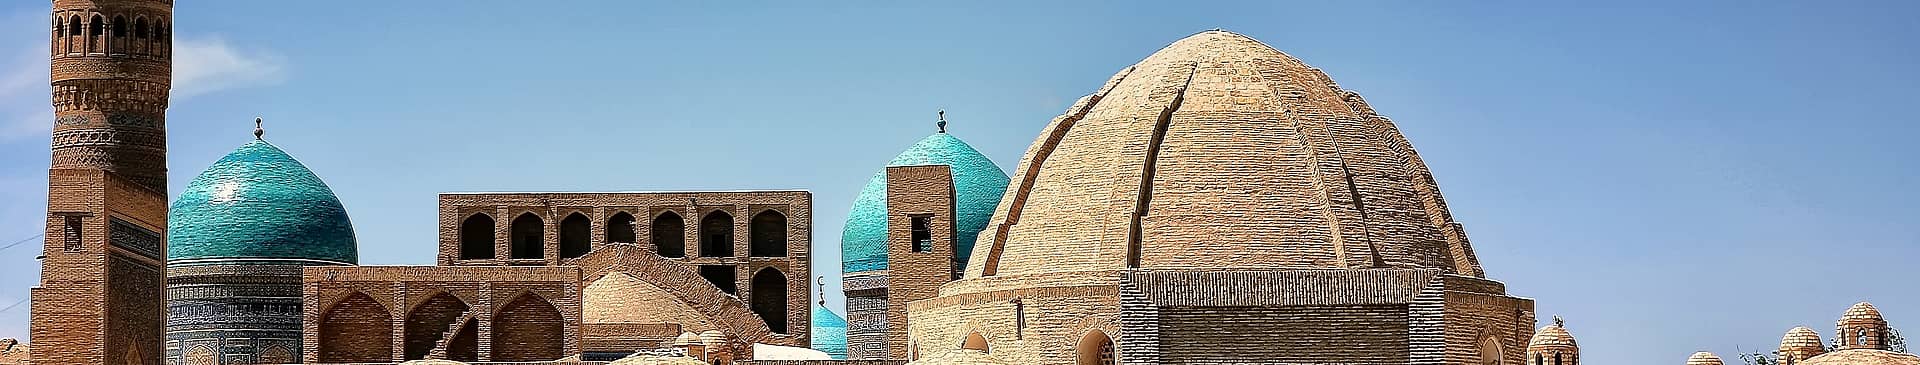 Viajes a Uzbekistán en verano